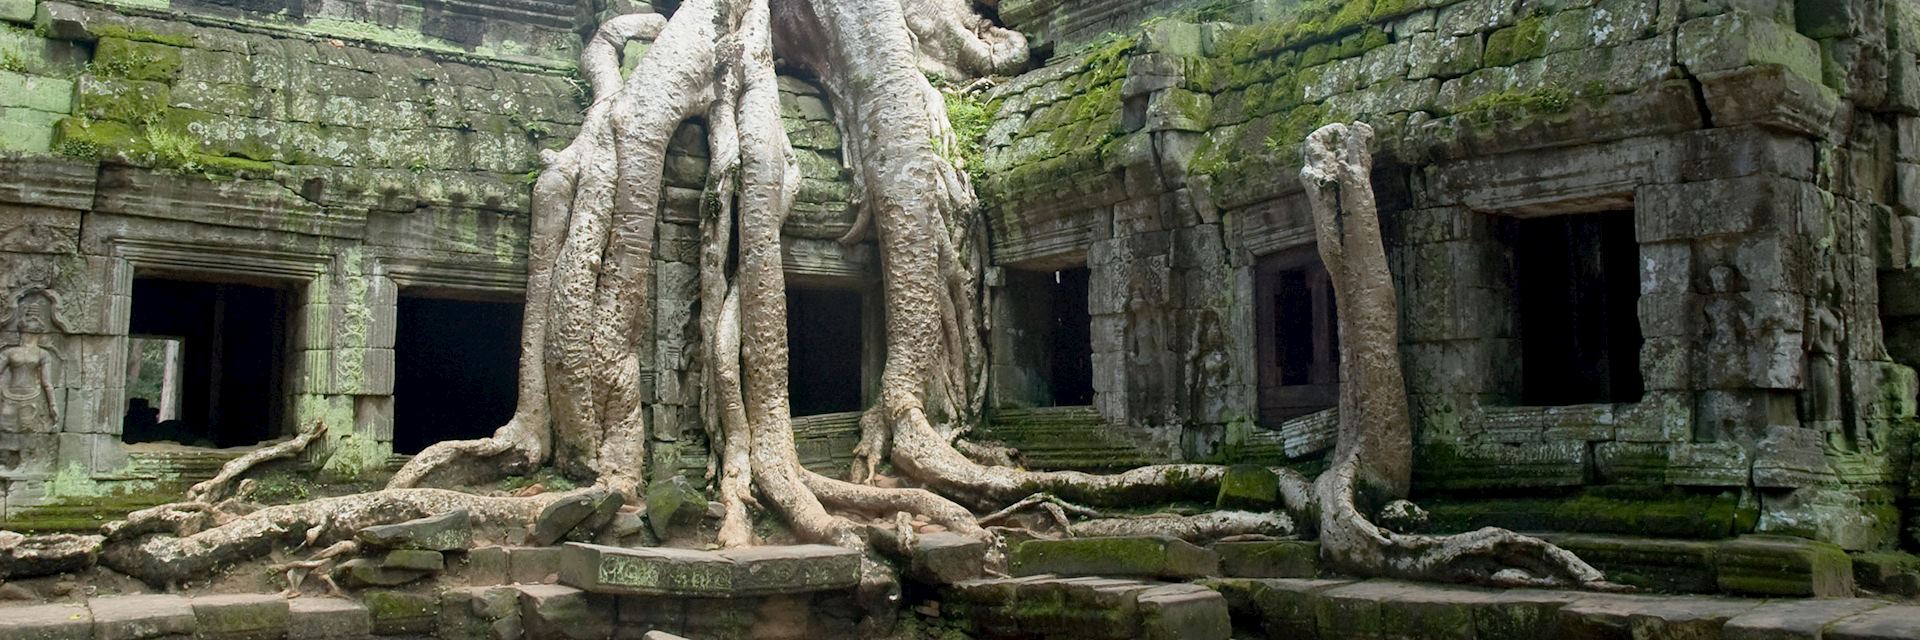 Banyan tree roots at Ta Prohm Temple, Angkor Wat, Cambodia 